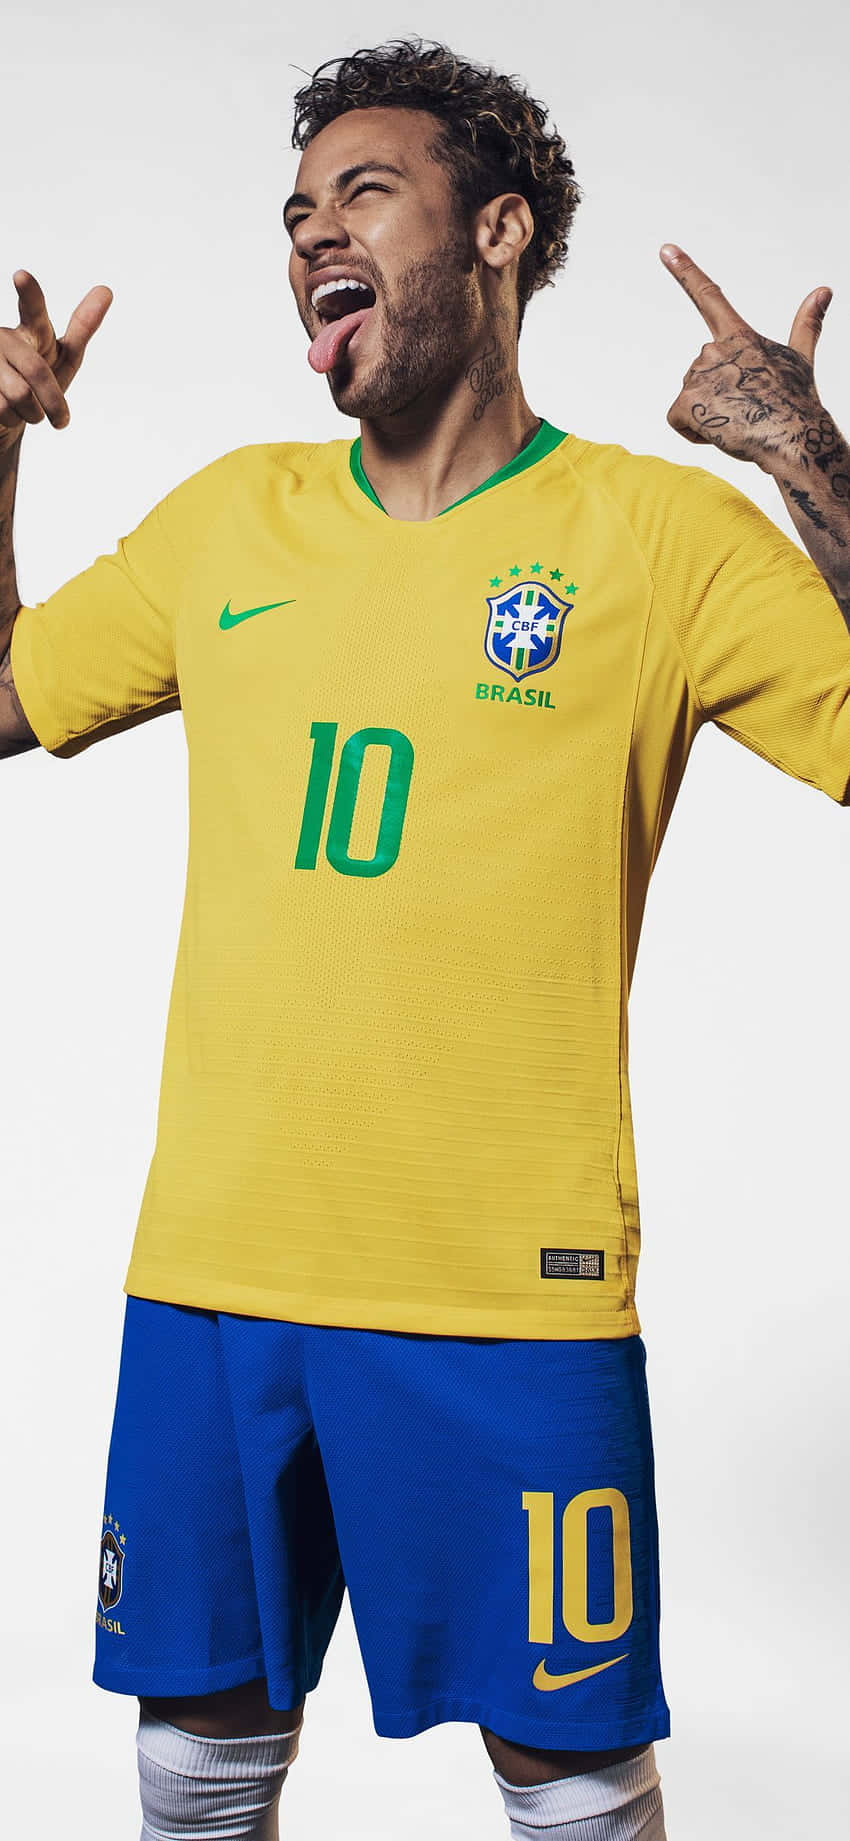 Einbrasilianischer Fußballspieler Posiert Für Die Kamera Wallpaper